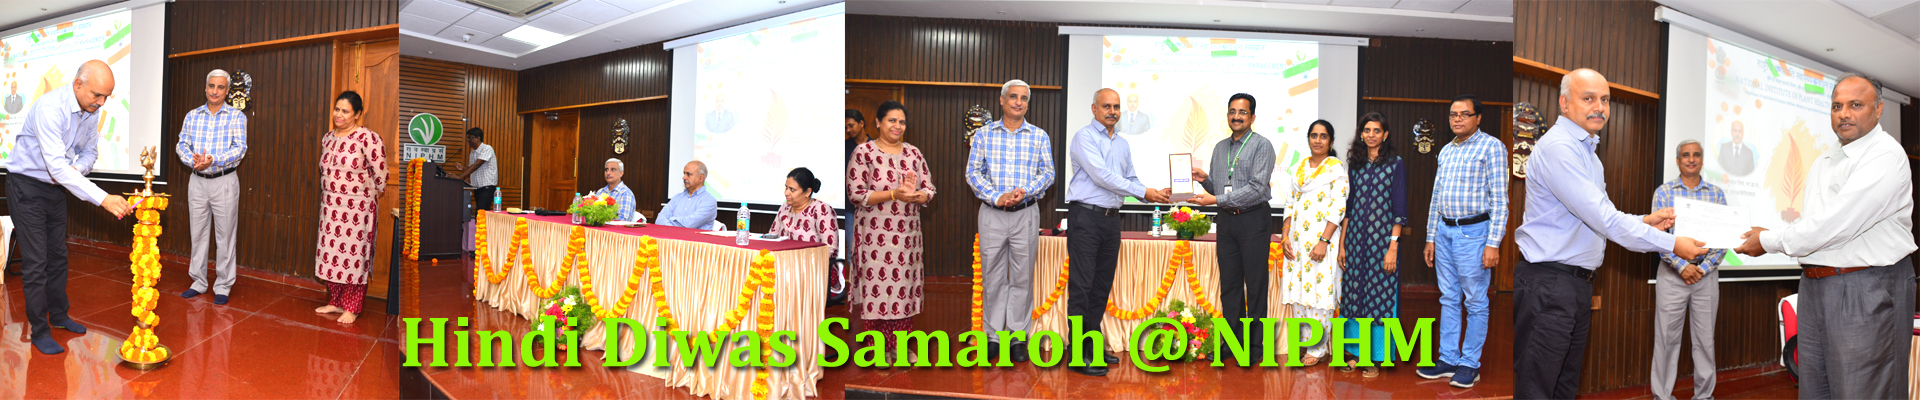 Hindi Diwas Samaroh organized @ NIPHM